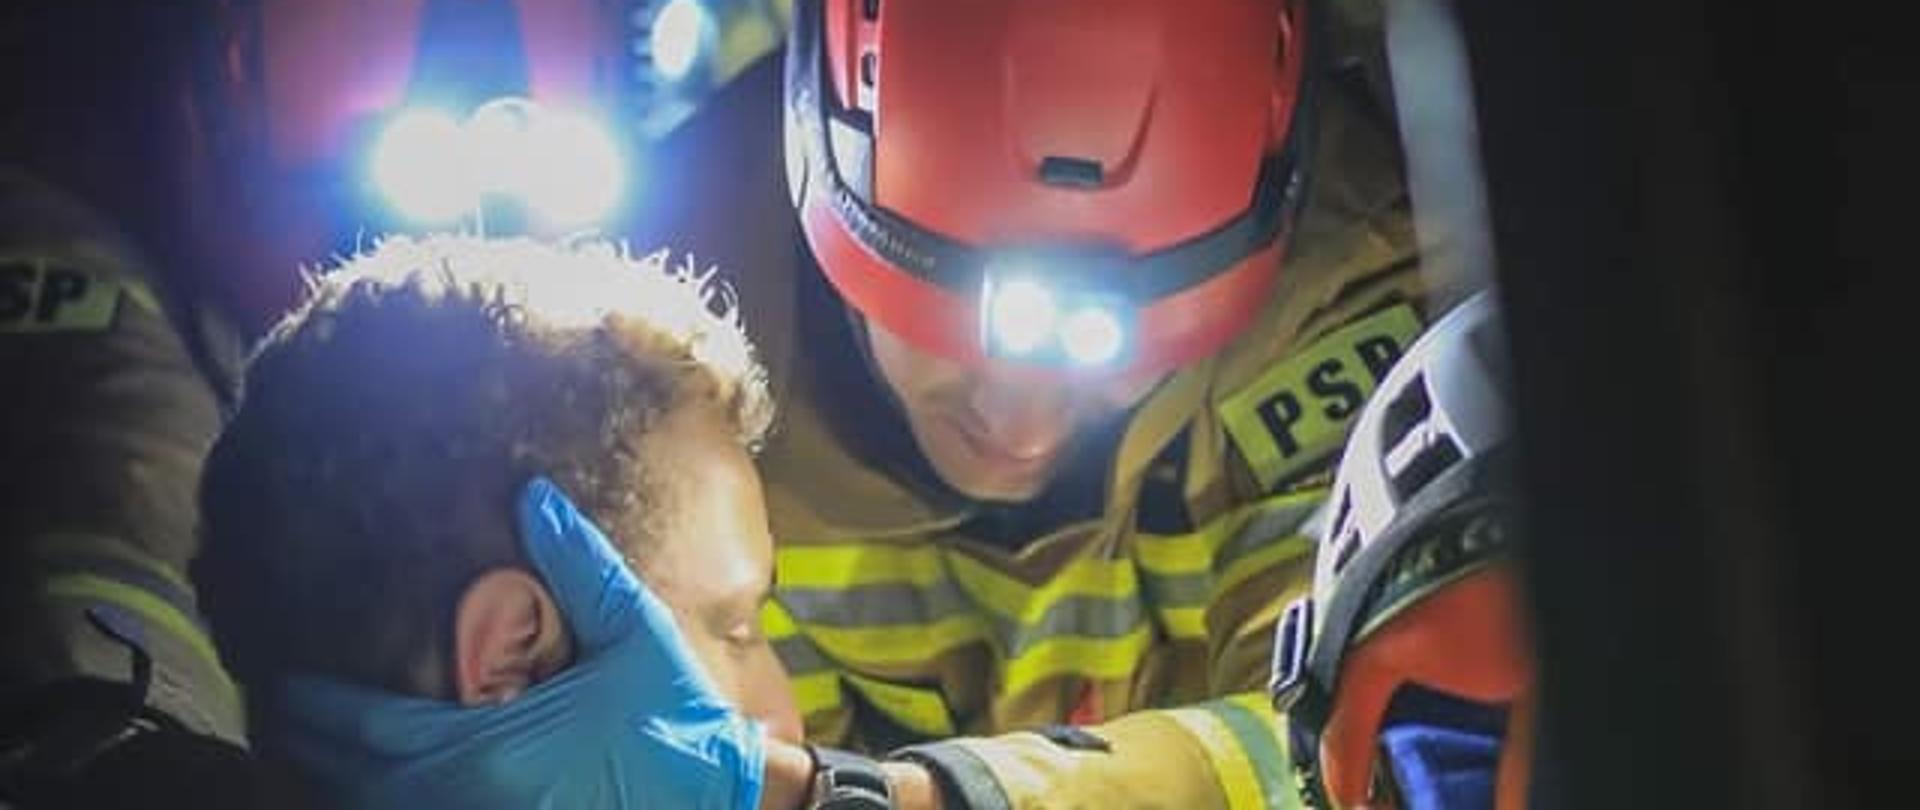 Na zdjęciu widać strażaka udzielającego pomocy osobie poszkodowanej. Osoba jest w pojeździe. 